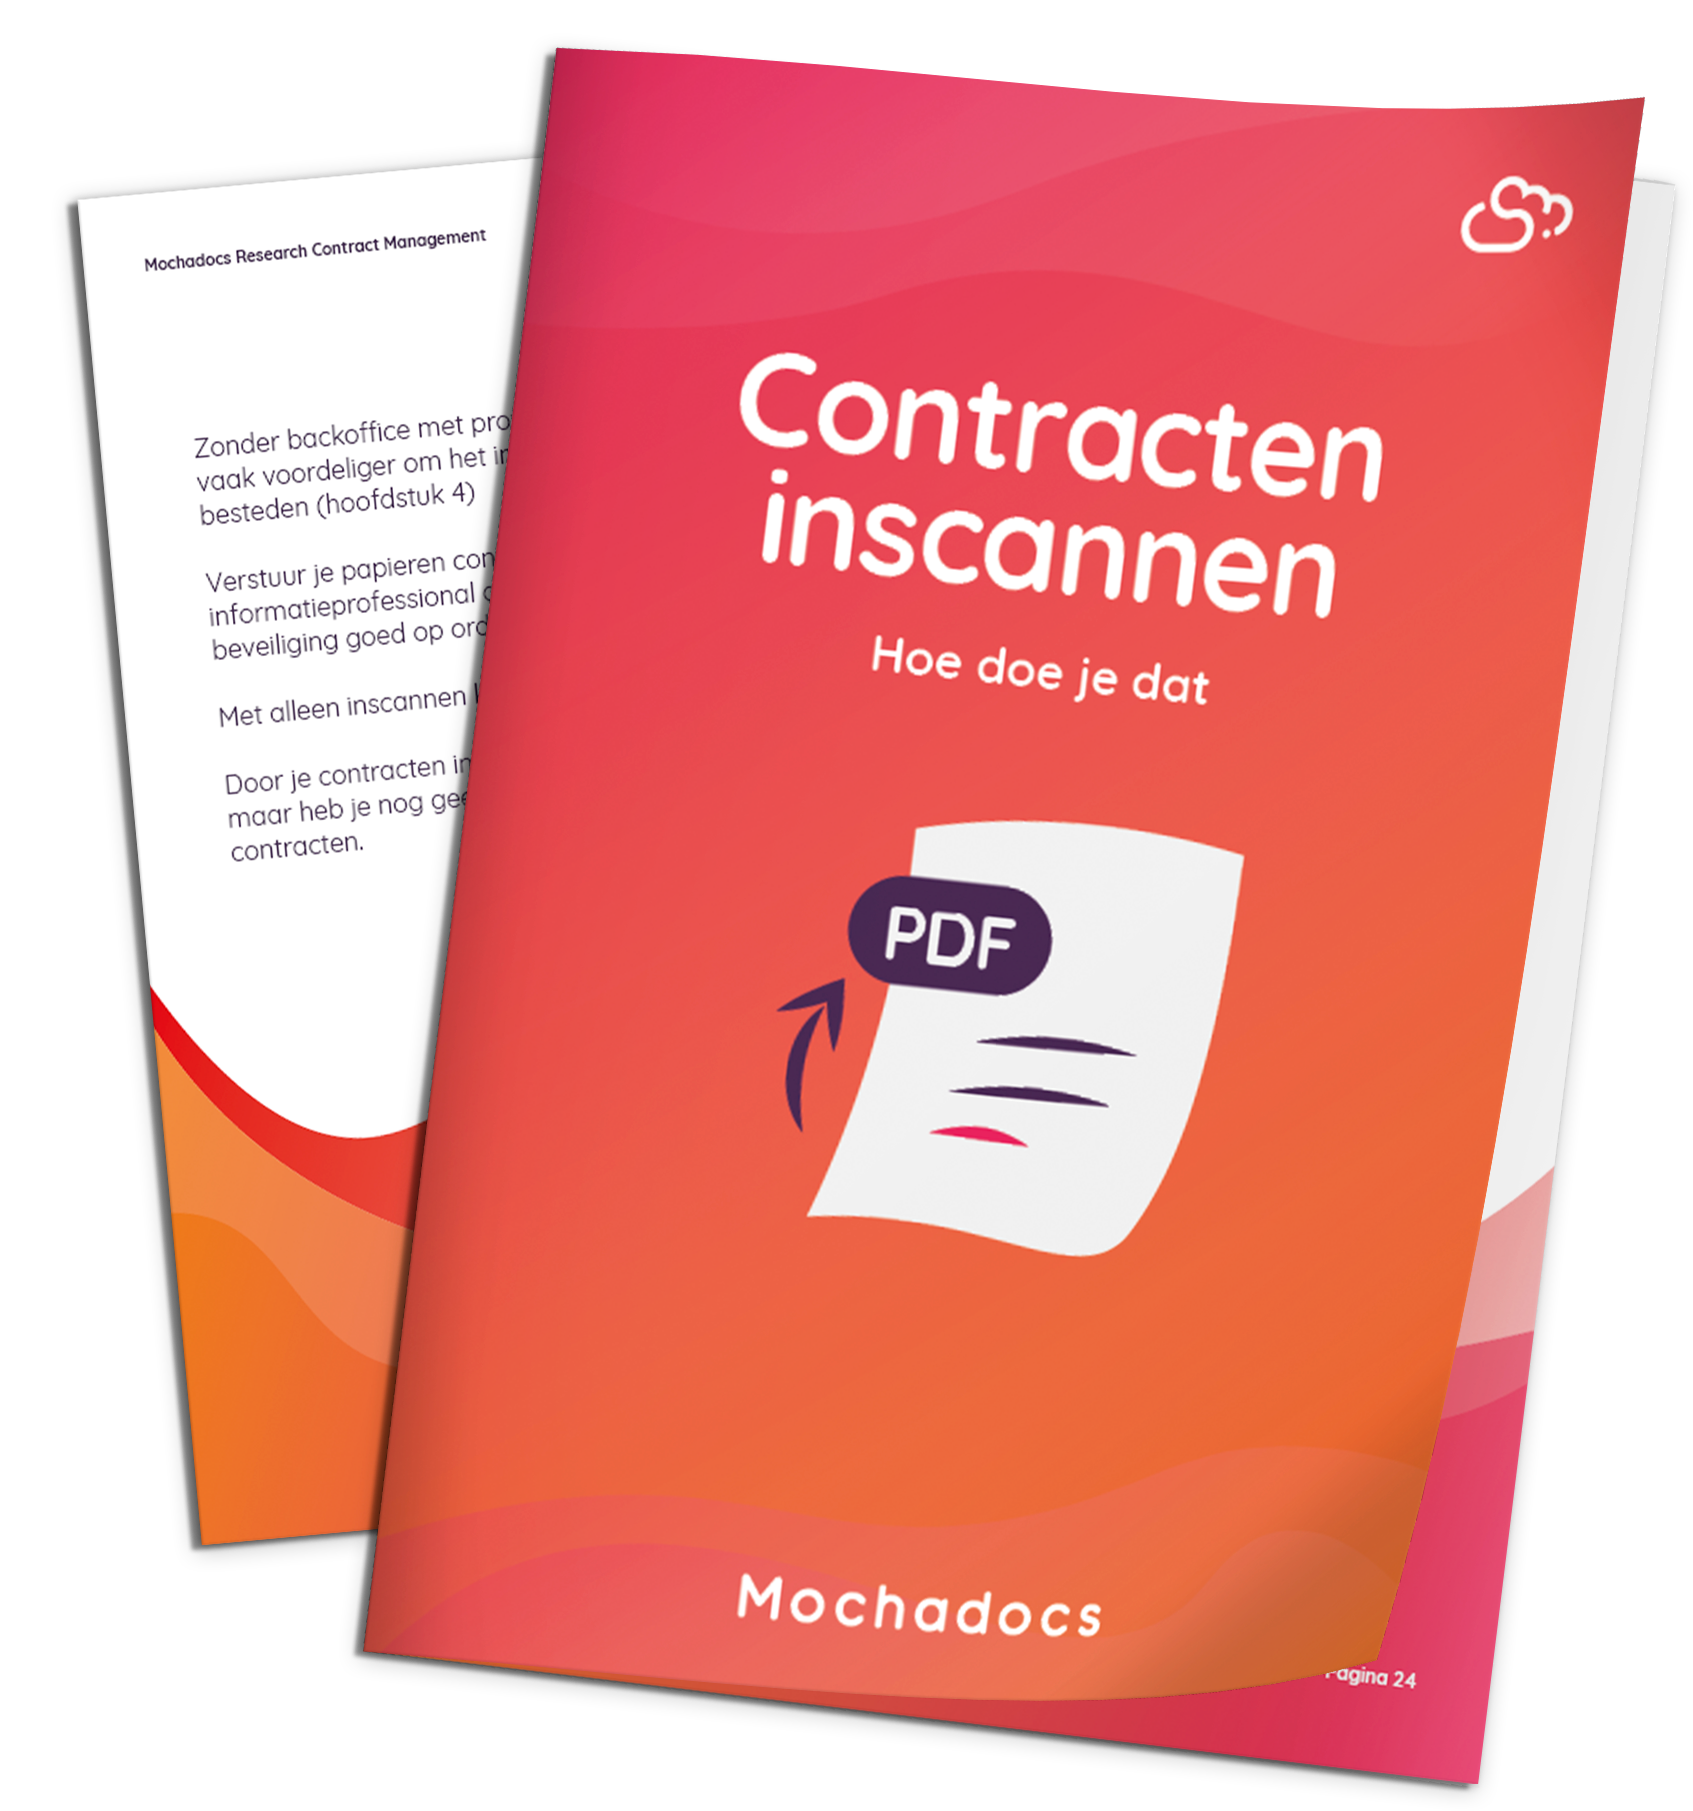 Mochadocs - Contract Lifecycle Management - Contracten inscannen hoe doe je dat?